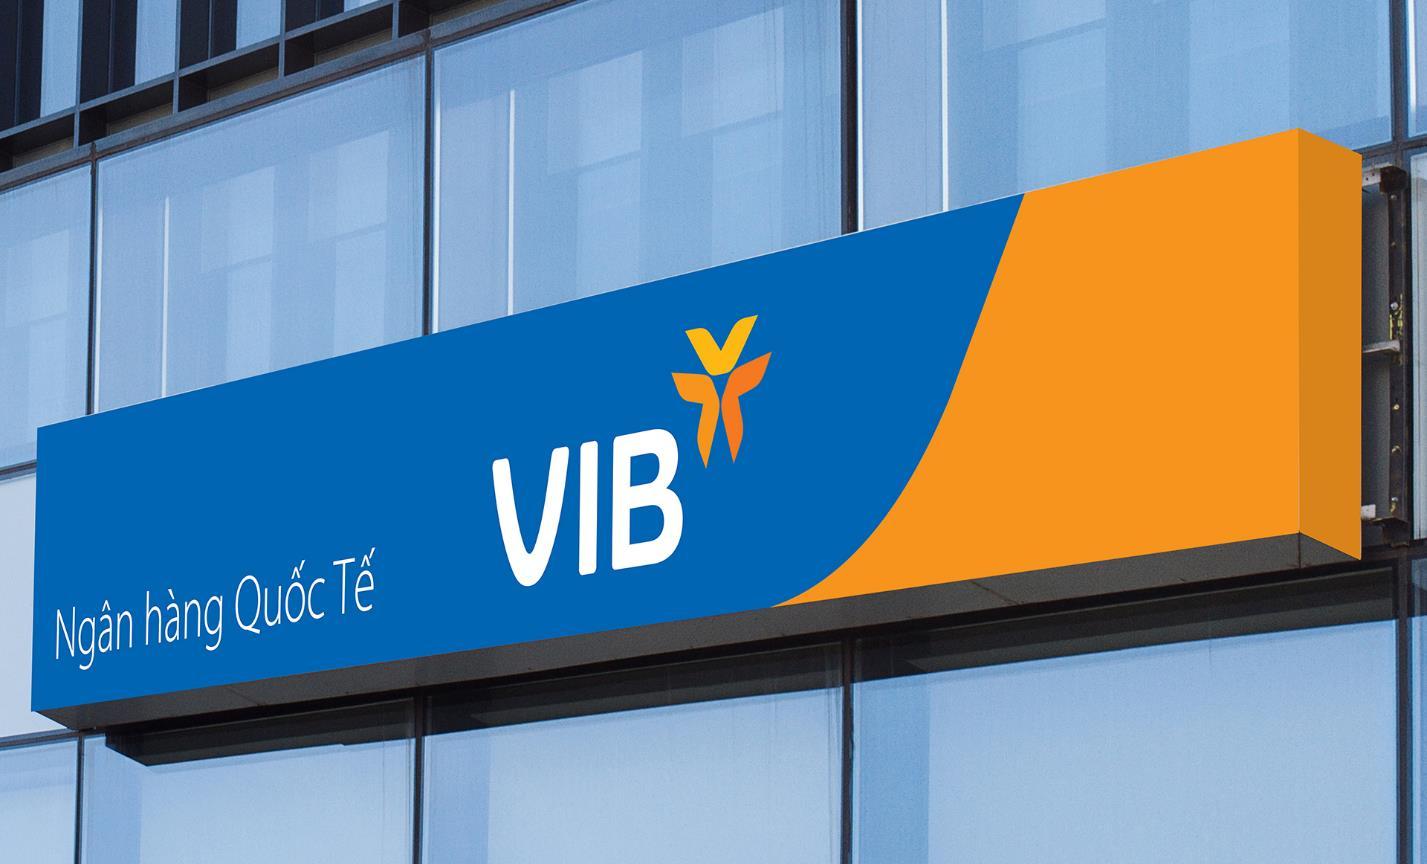 VIB đã tiến hành điều chỉnh lãi suất huy động đối với kỳ hạn 1 tháng tăng thêm 0,1 điểm phần trăm, lên mức 2,6%/năm - đây cũng là kỳ hạn tiền gửi duy nhất được ngân hàng VIB điều chỉnh trong lần này. (Ảnh minh họa)